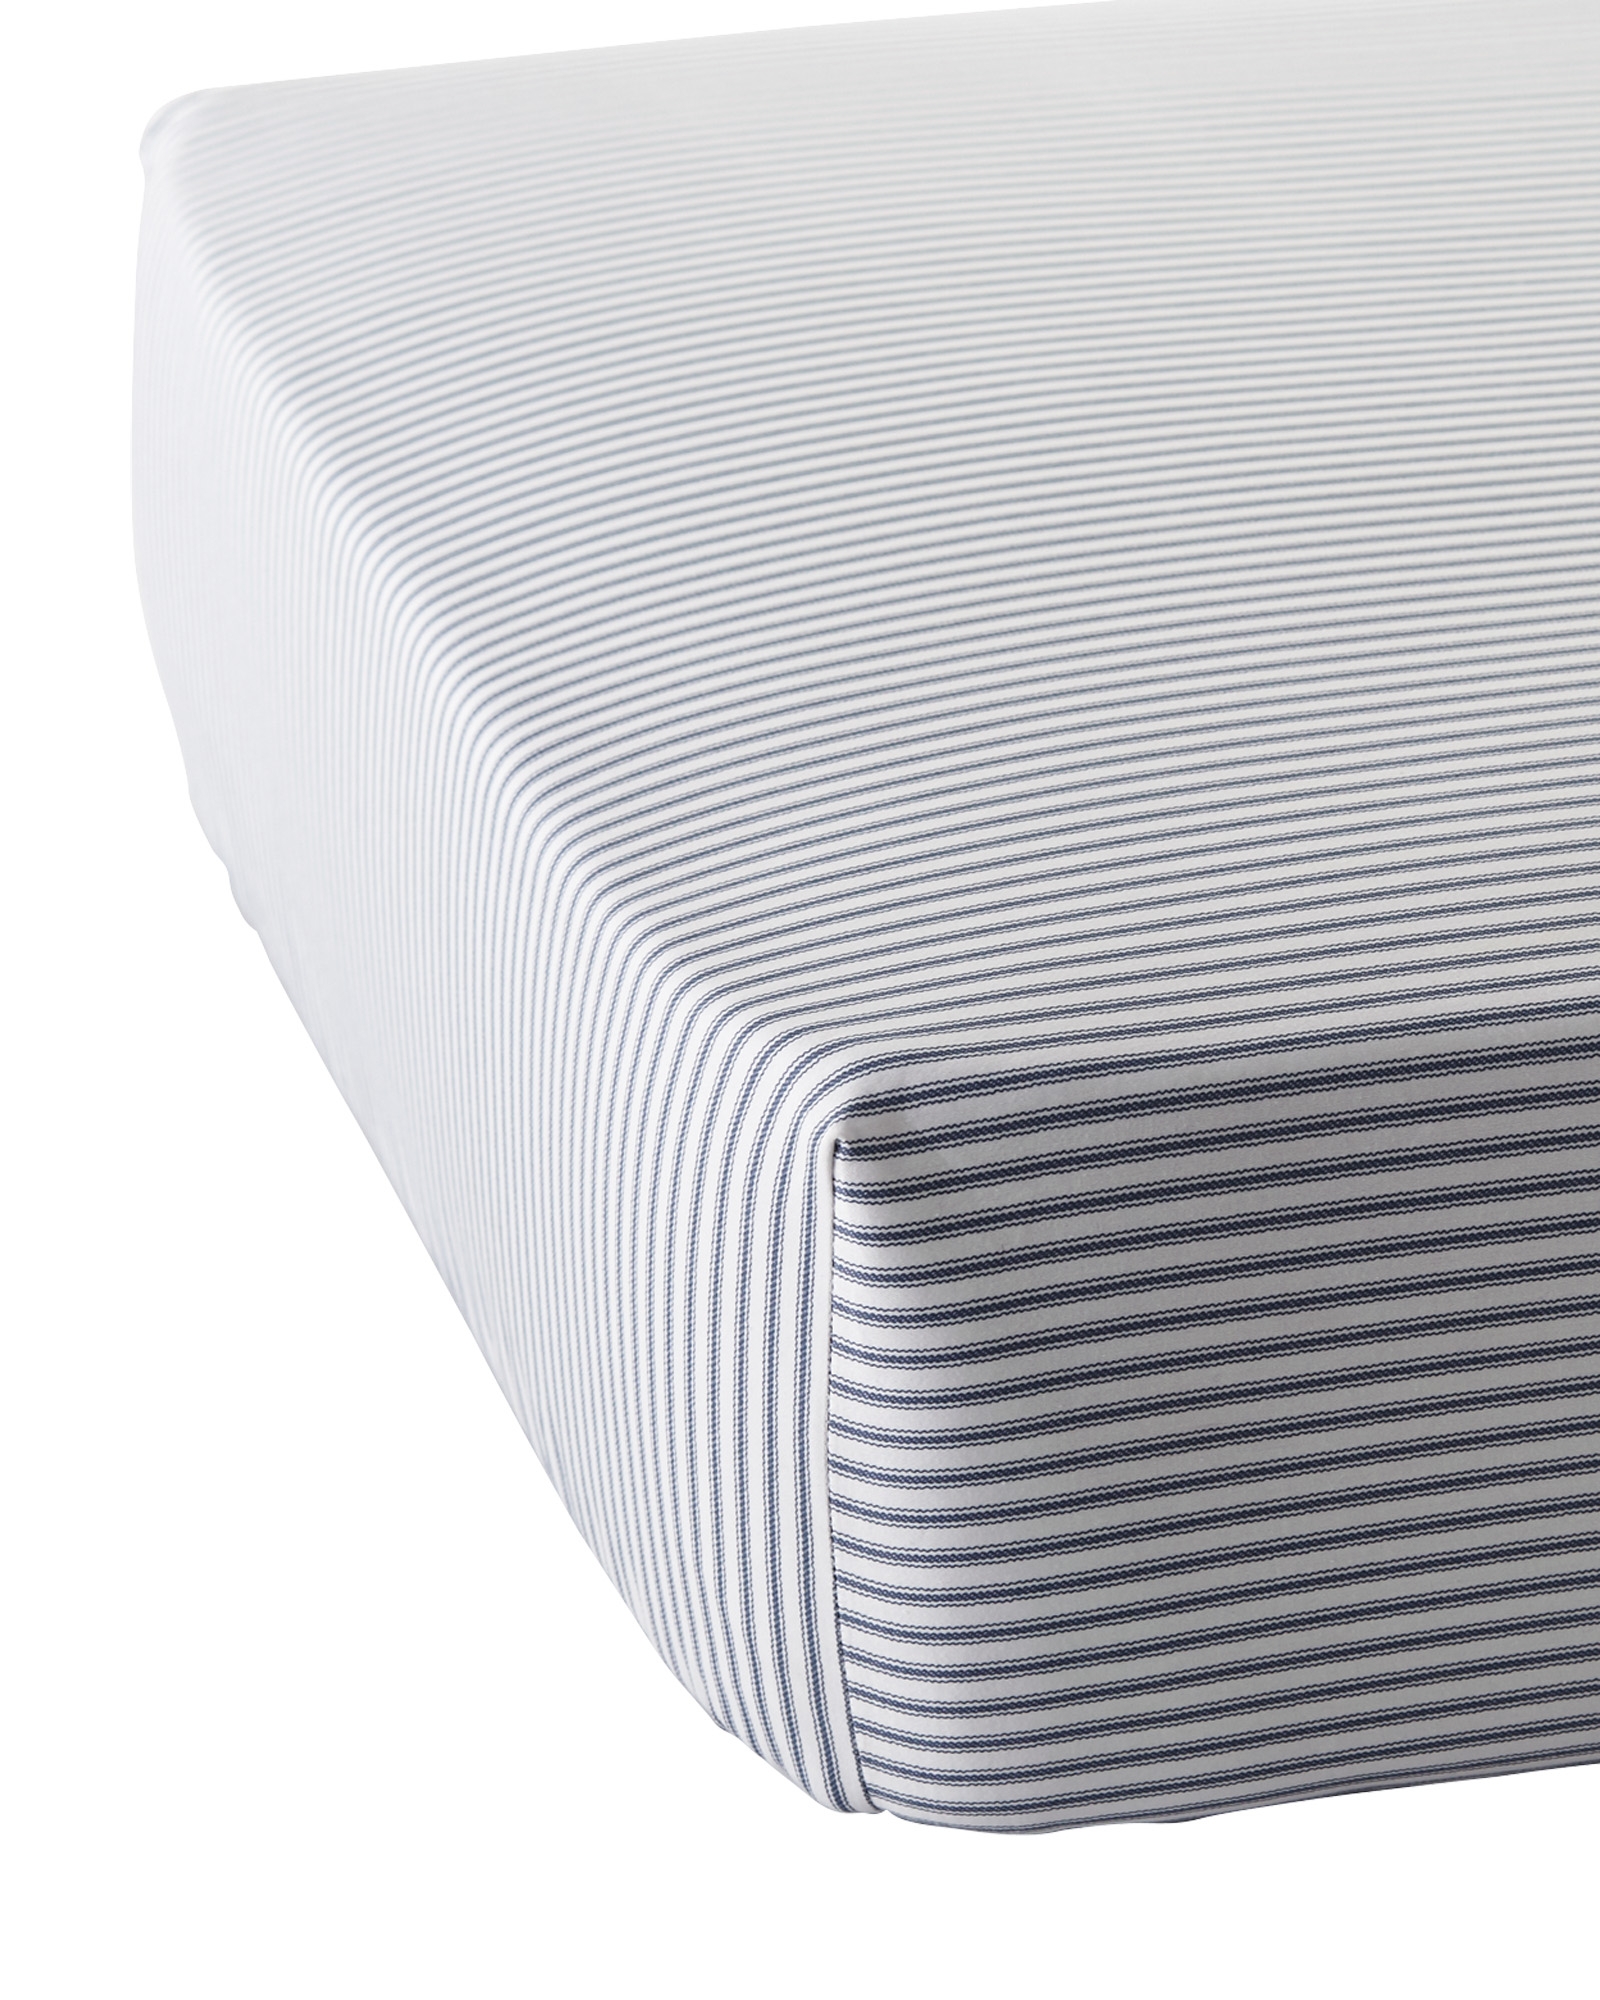 Ticking Stripe Crib Sheet - Denim - Image 0